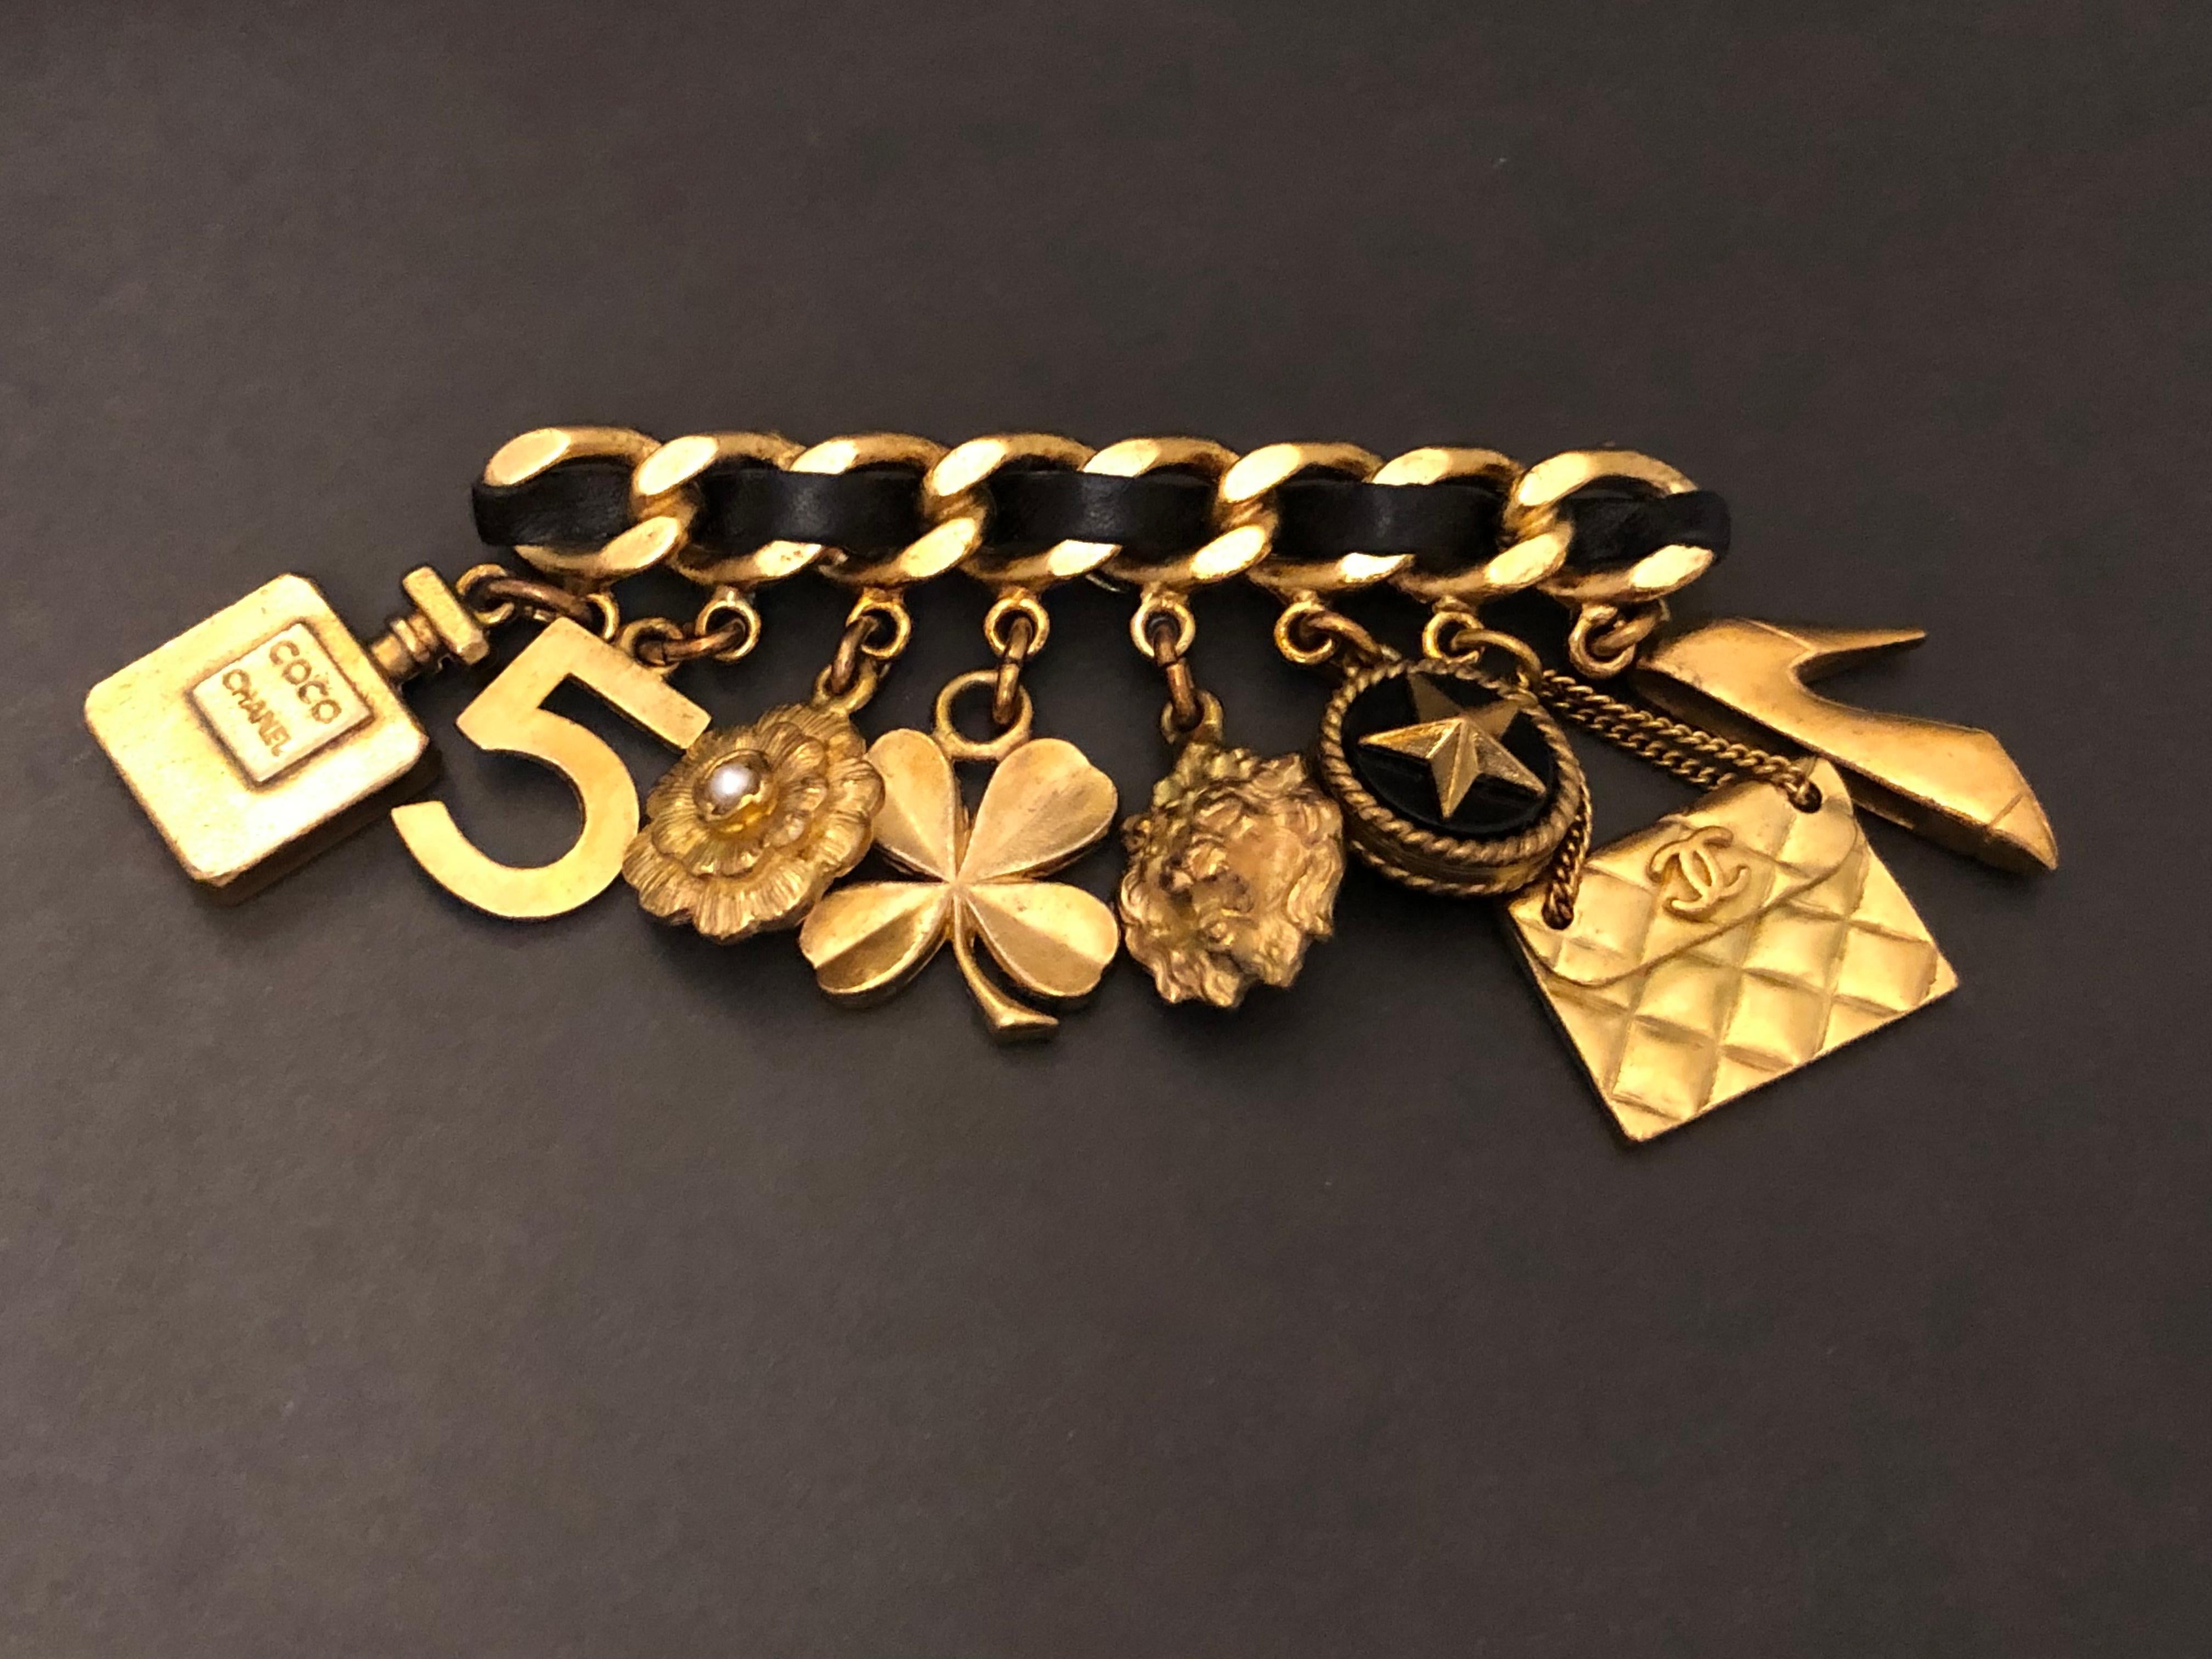 1994 Vintage Chanel goldfarbene Kettenbrosche mit acht ikonischen Motiven wie Klee, Kamelie, Löwe, No.5, Parfümflasche etc.etc. in schwarzem Leder.  Gestempelt 94A, hergestellt in Frankreich. Maße: ca. 8,2 x 5,1 cm. Wird mit Box geliefert.